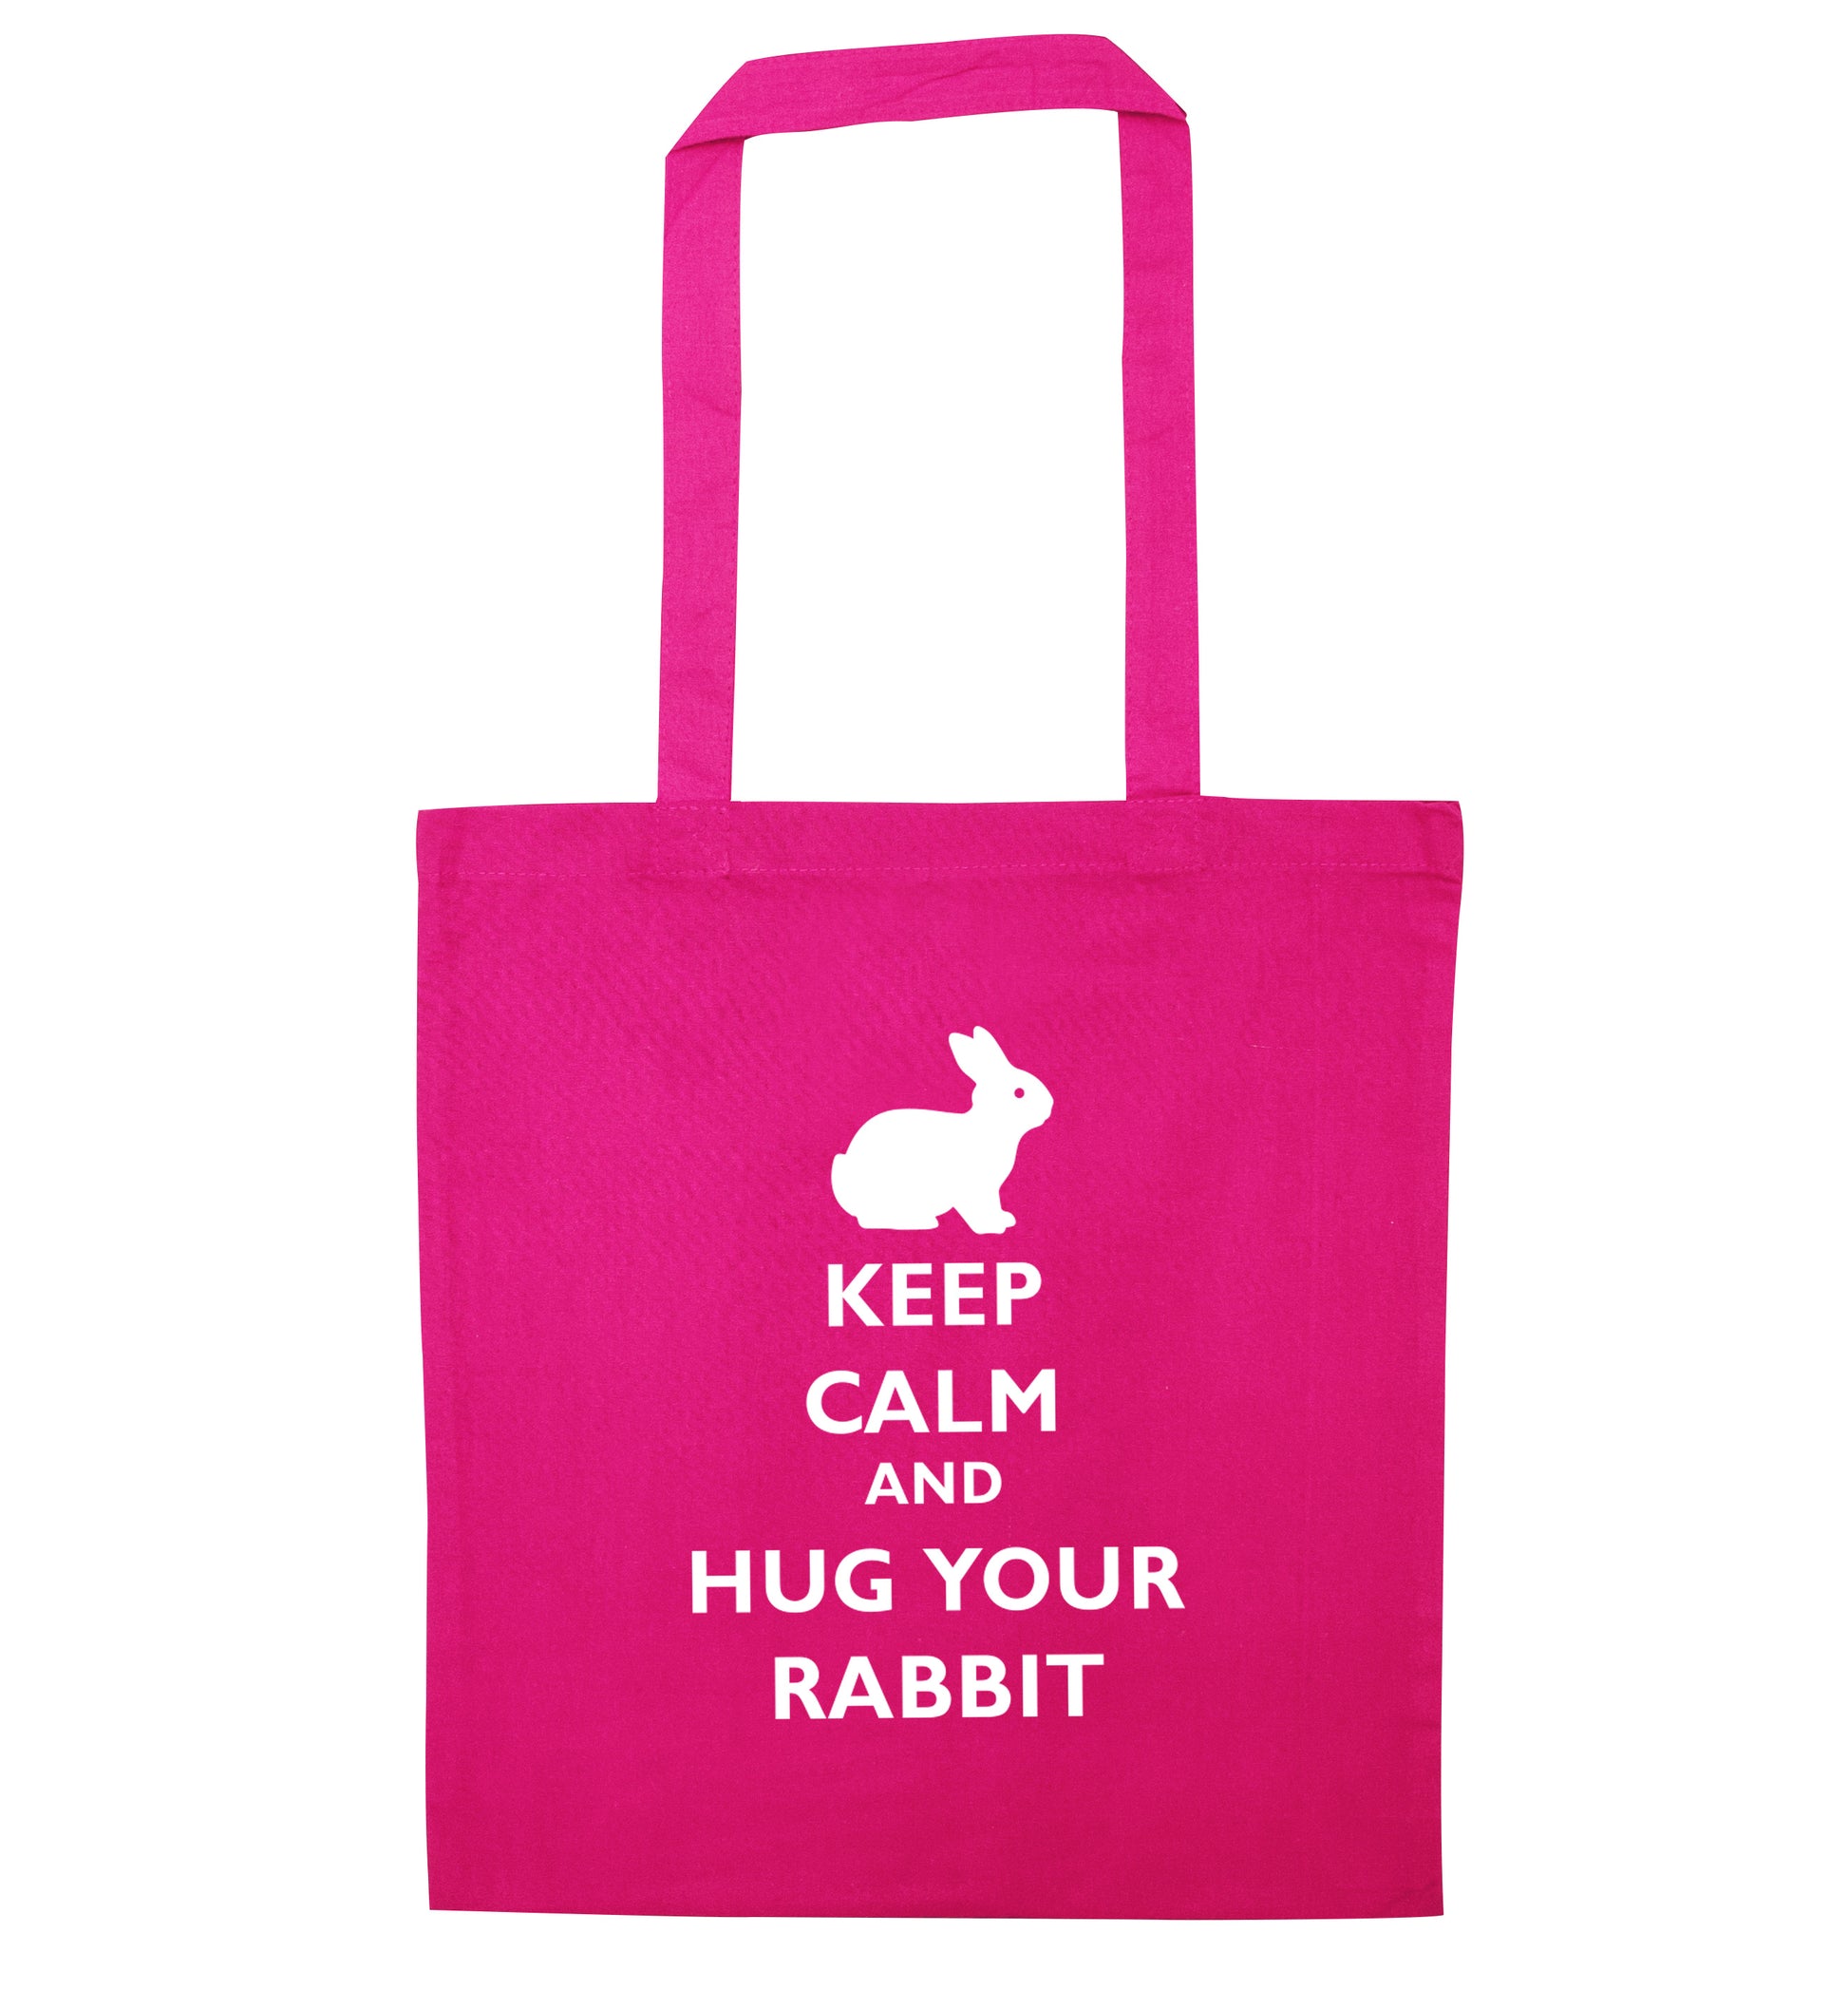 Keep calm and hug your rabbit pink tote bag